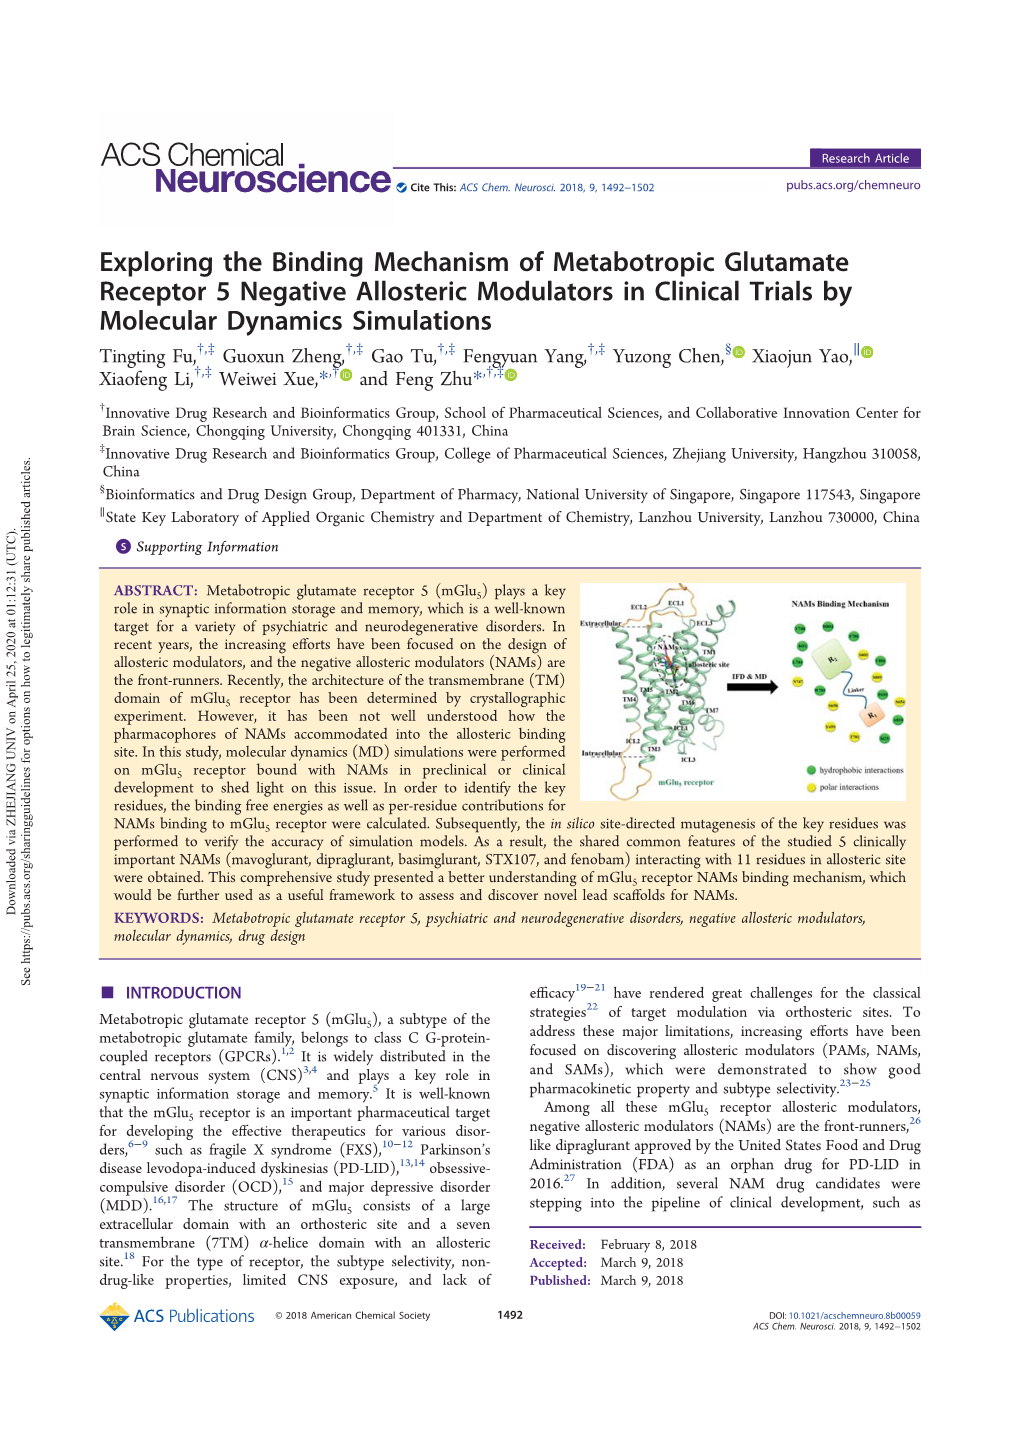 Exploring the Binding Mechanism of Metabotropic Glutamate Receptor 5